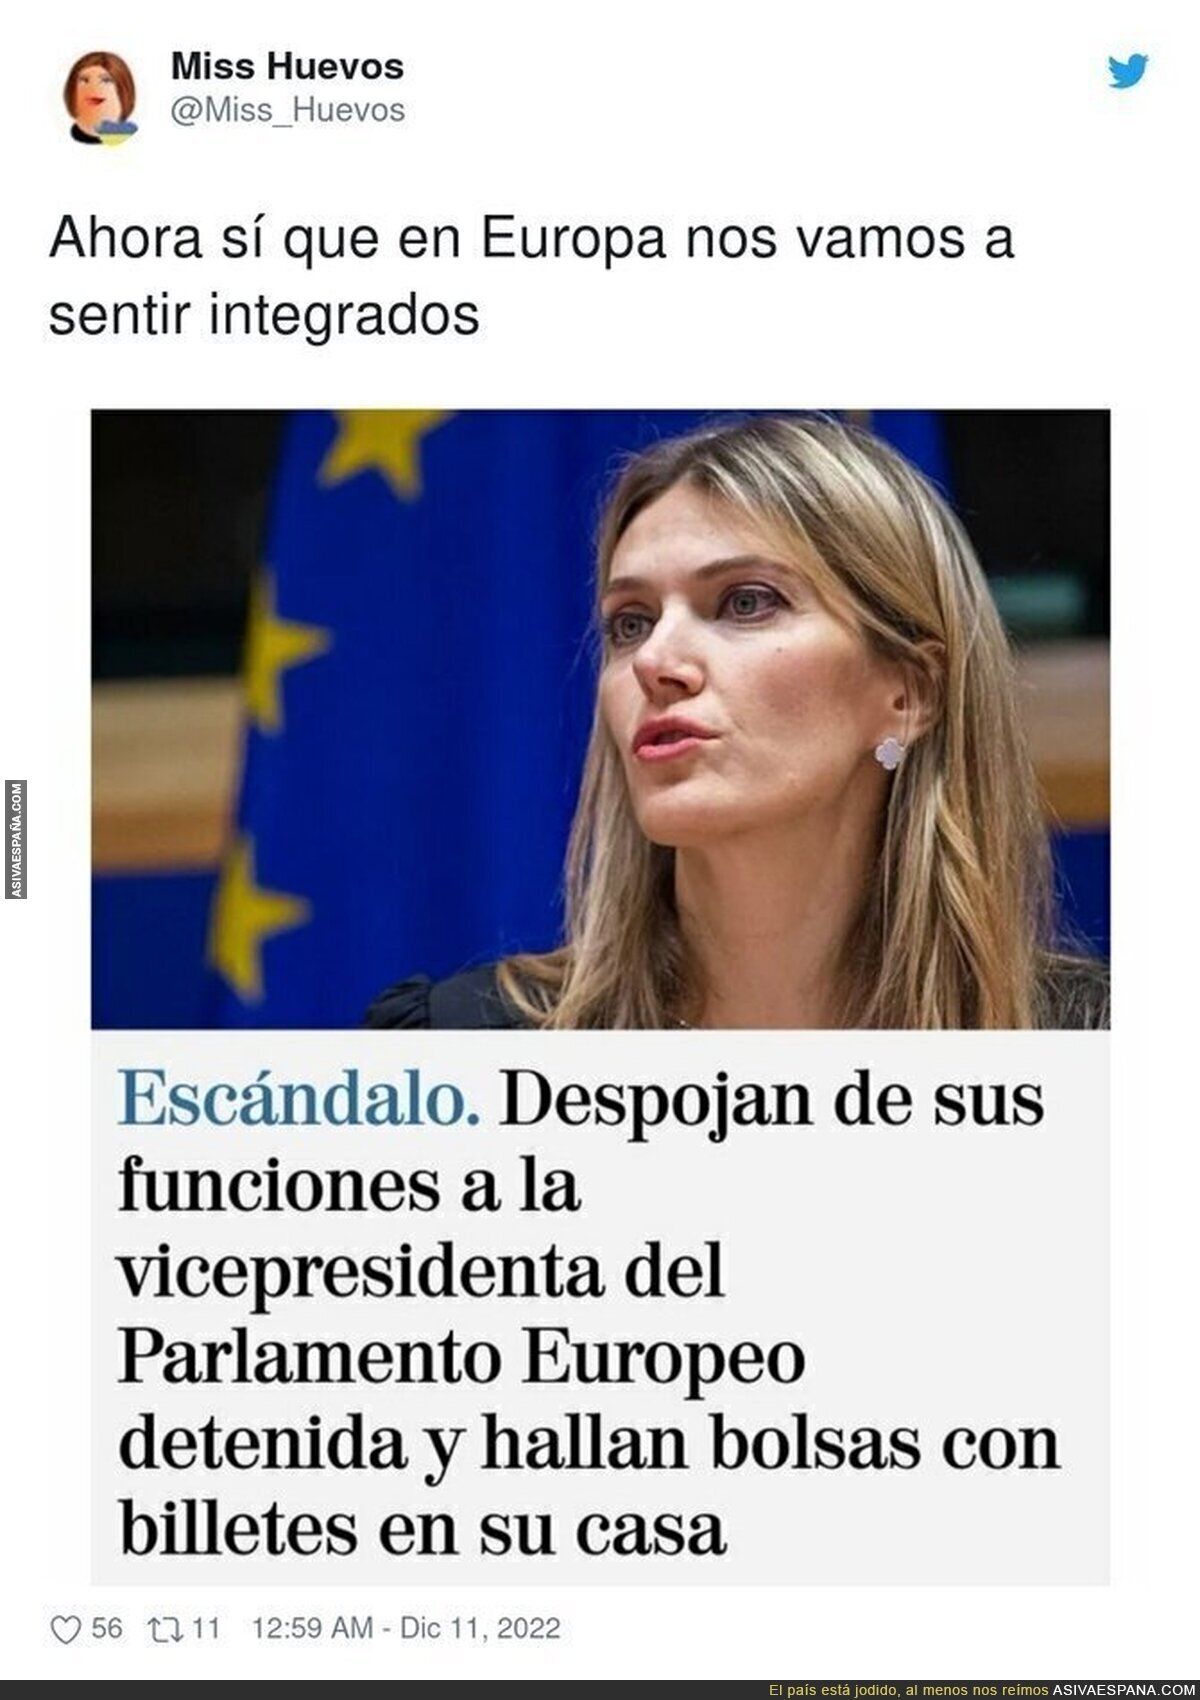 La Vicepresidenta del Parlamento Europeo y sus costumbres muy españolas